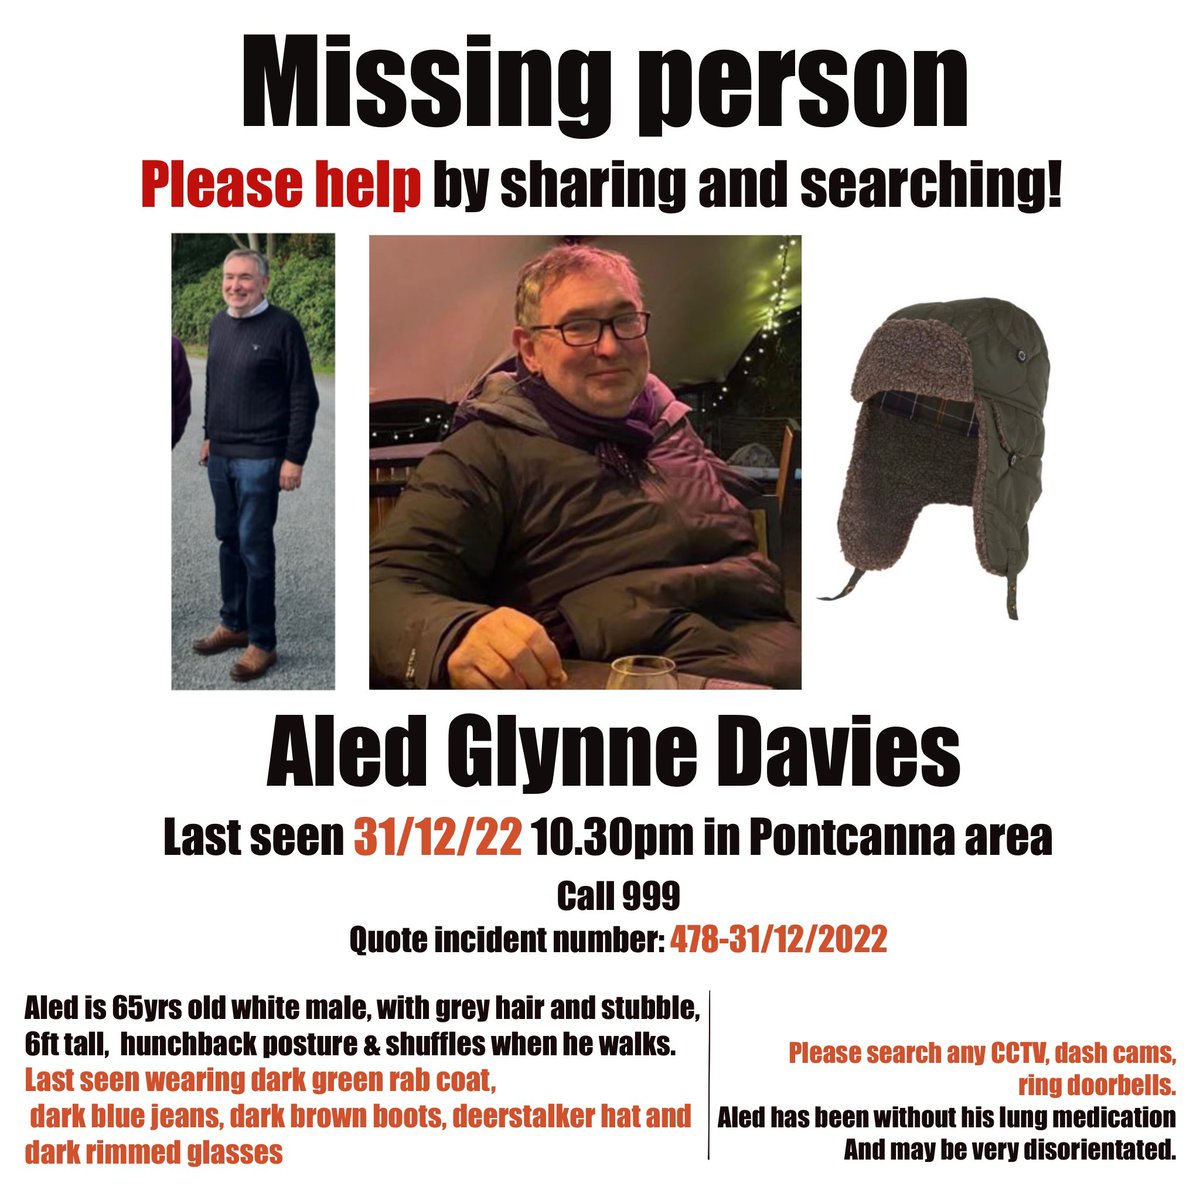 Mae #AledGlynne dal ar goll. Plîs rhannwch y poster yma. Aled Glynne is still missing. Please share this poster to help find him.